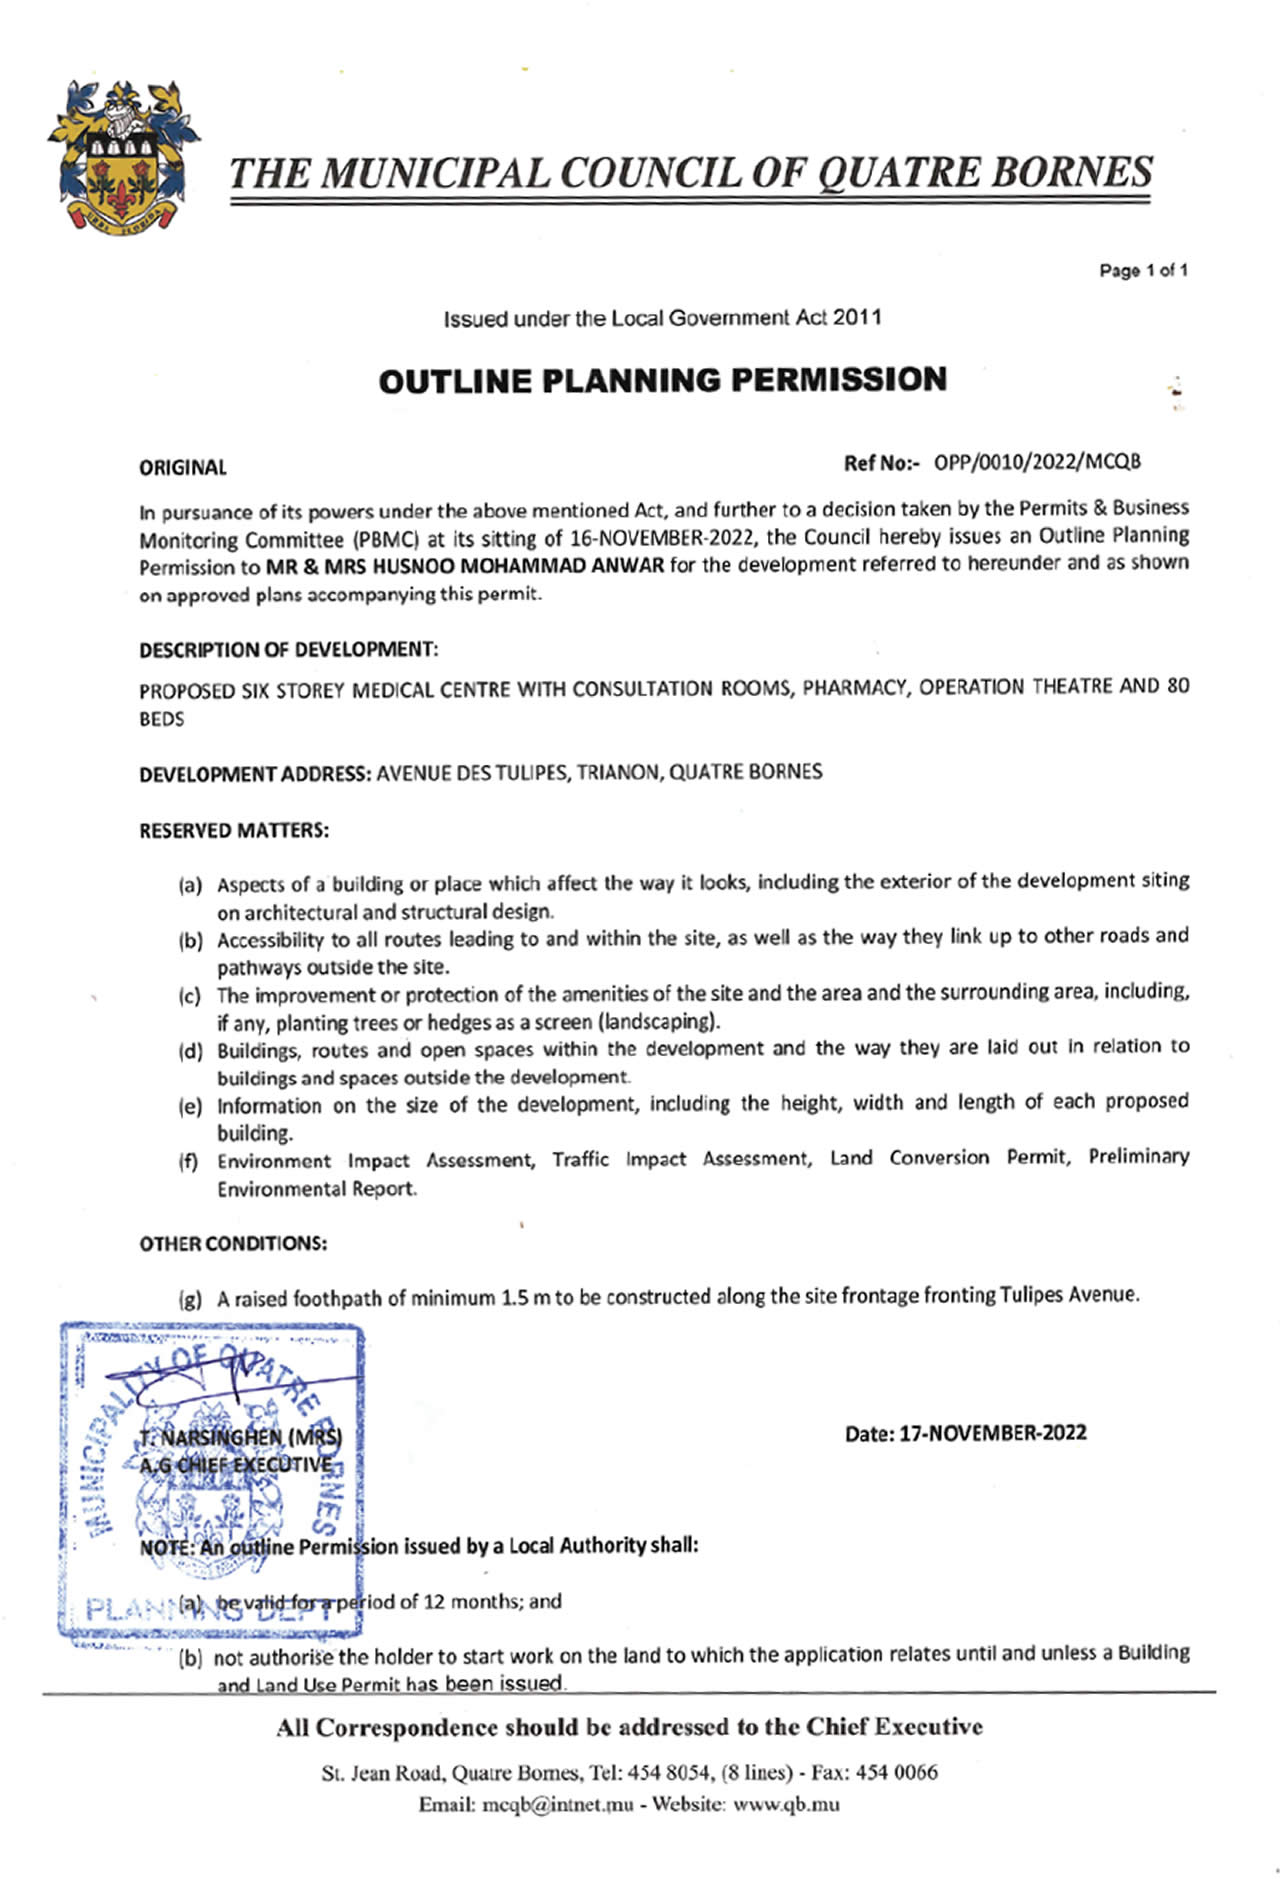 Husnoo outline planning permission : La municipalité de Quatre-Bornes a donné l’Outline Planning Permission à Anwar Husnoo et son épouse pour ce projet le 16 novembre.